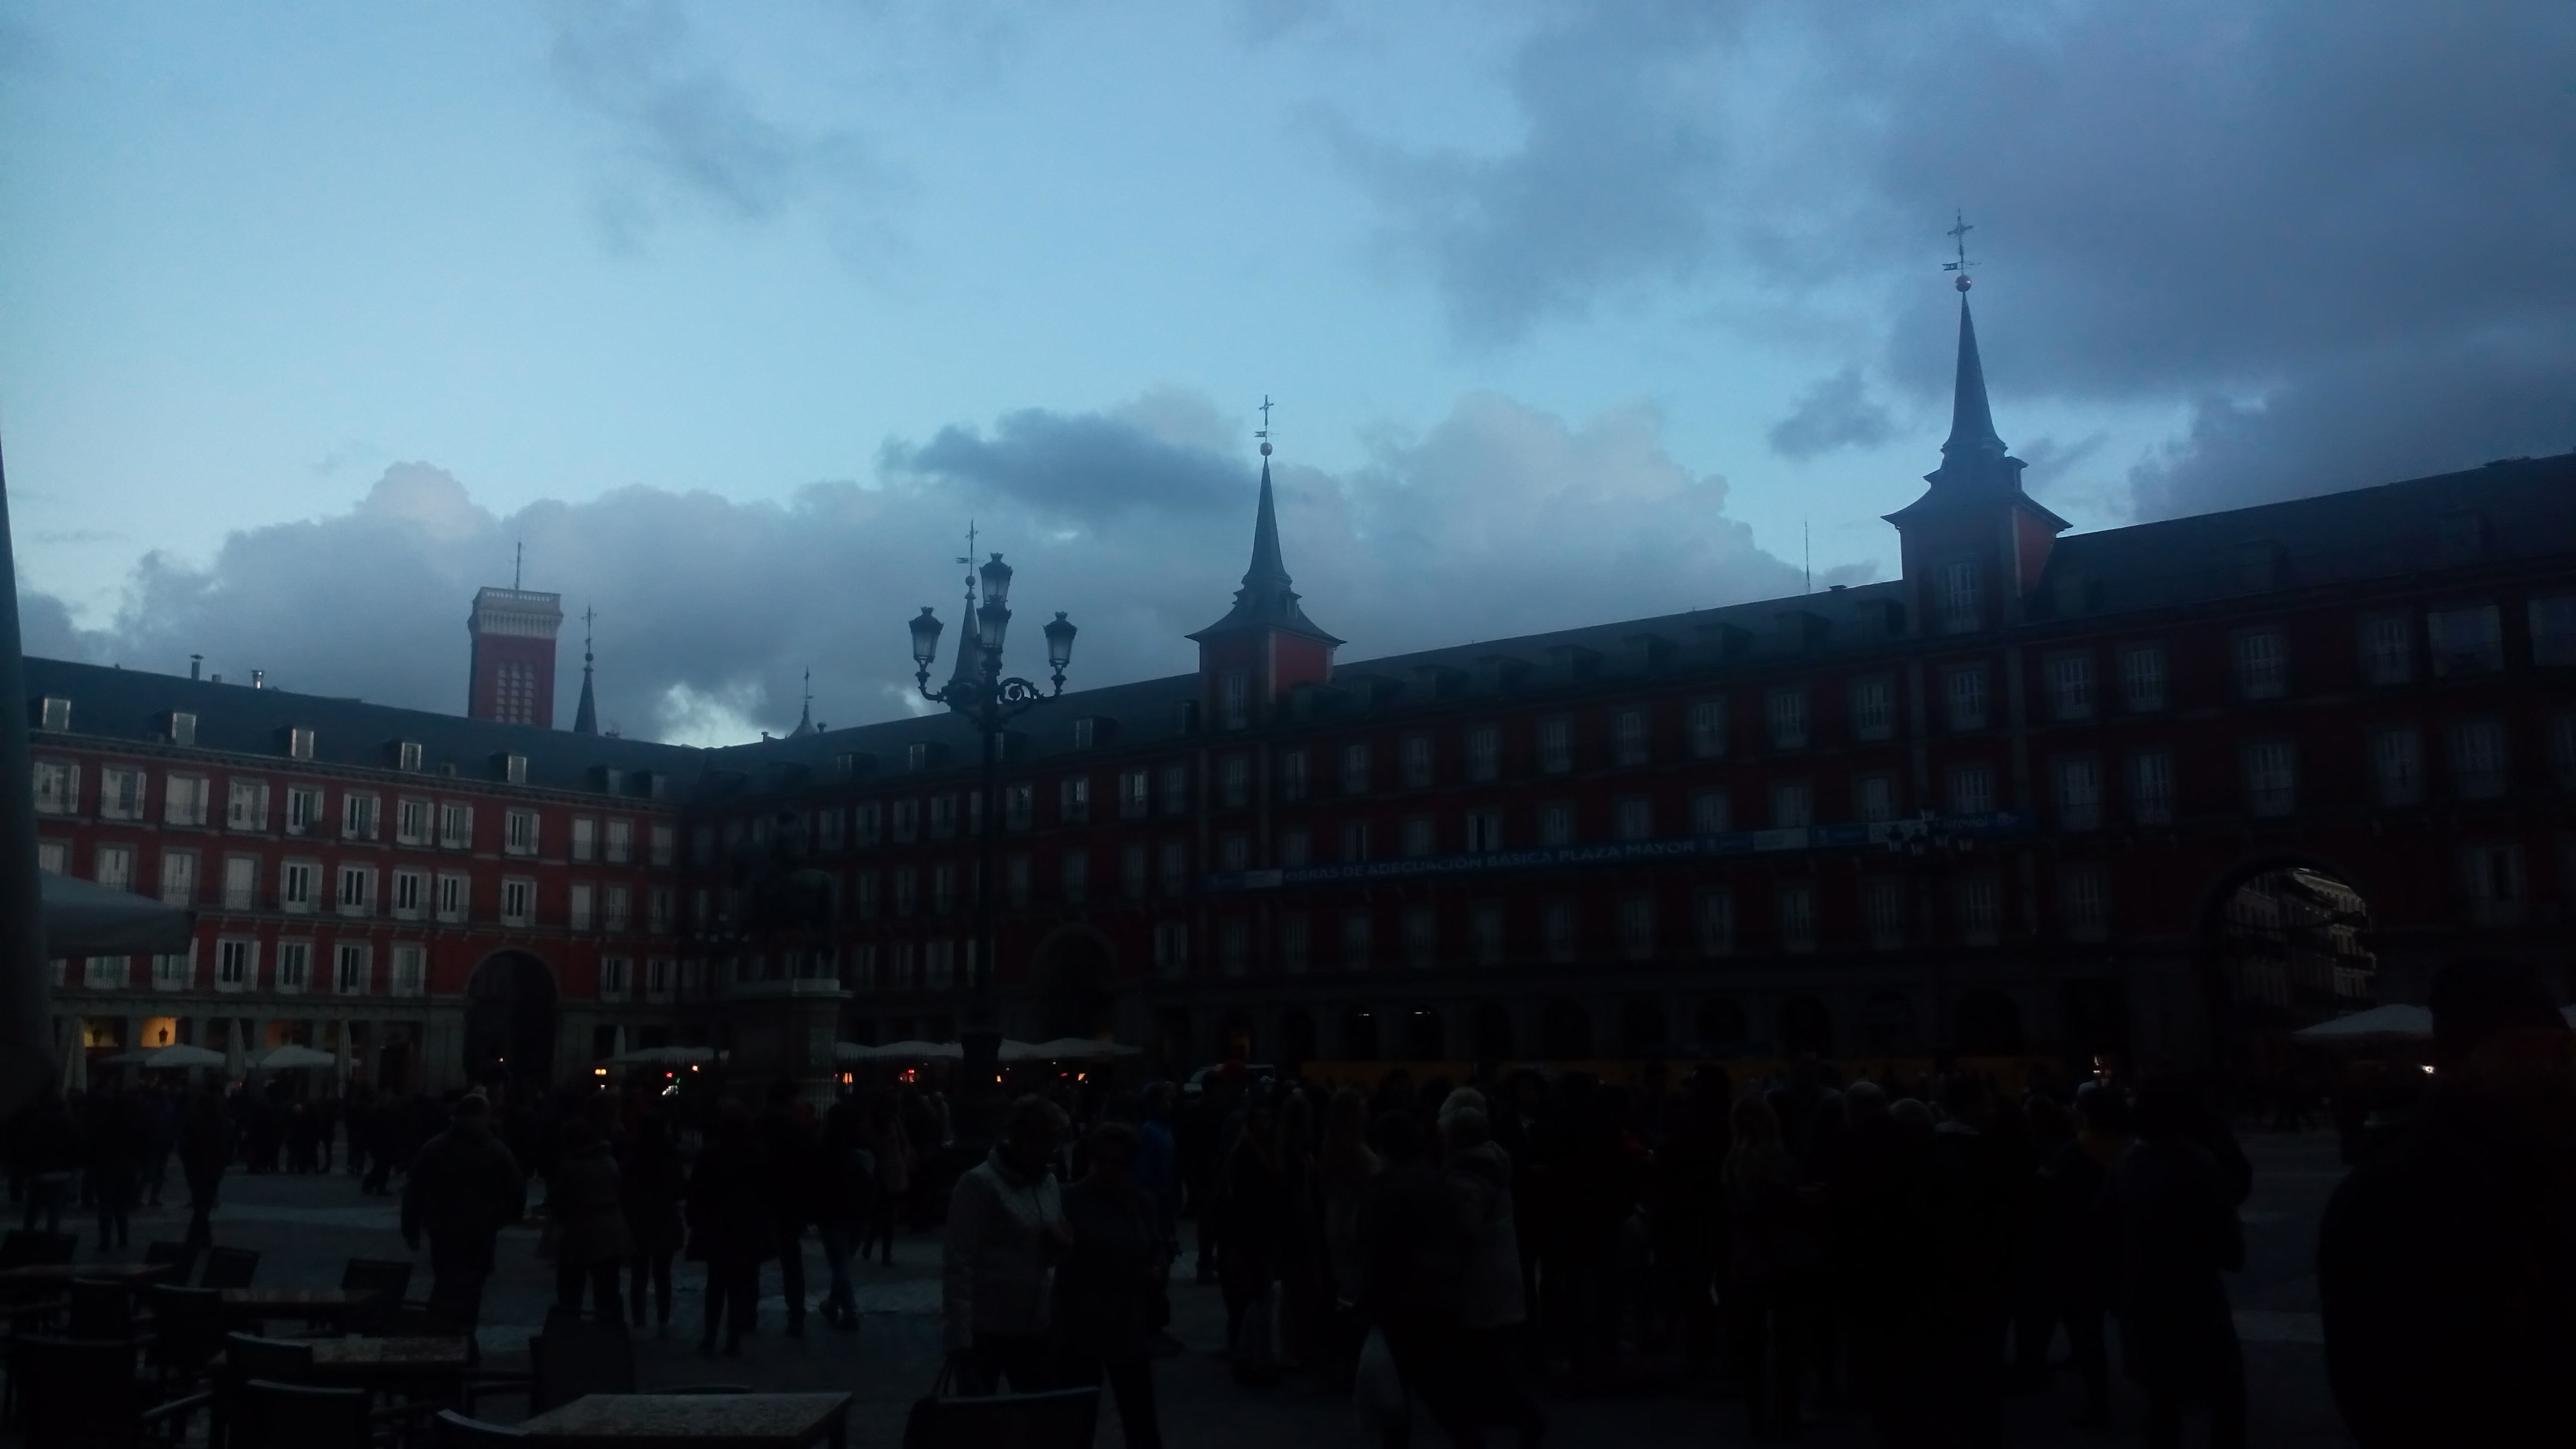 Foto: Plaza Mayor - Madrid (Comunidad de Madrid), España